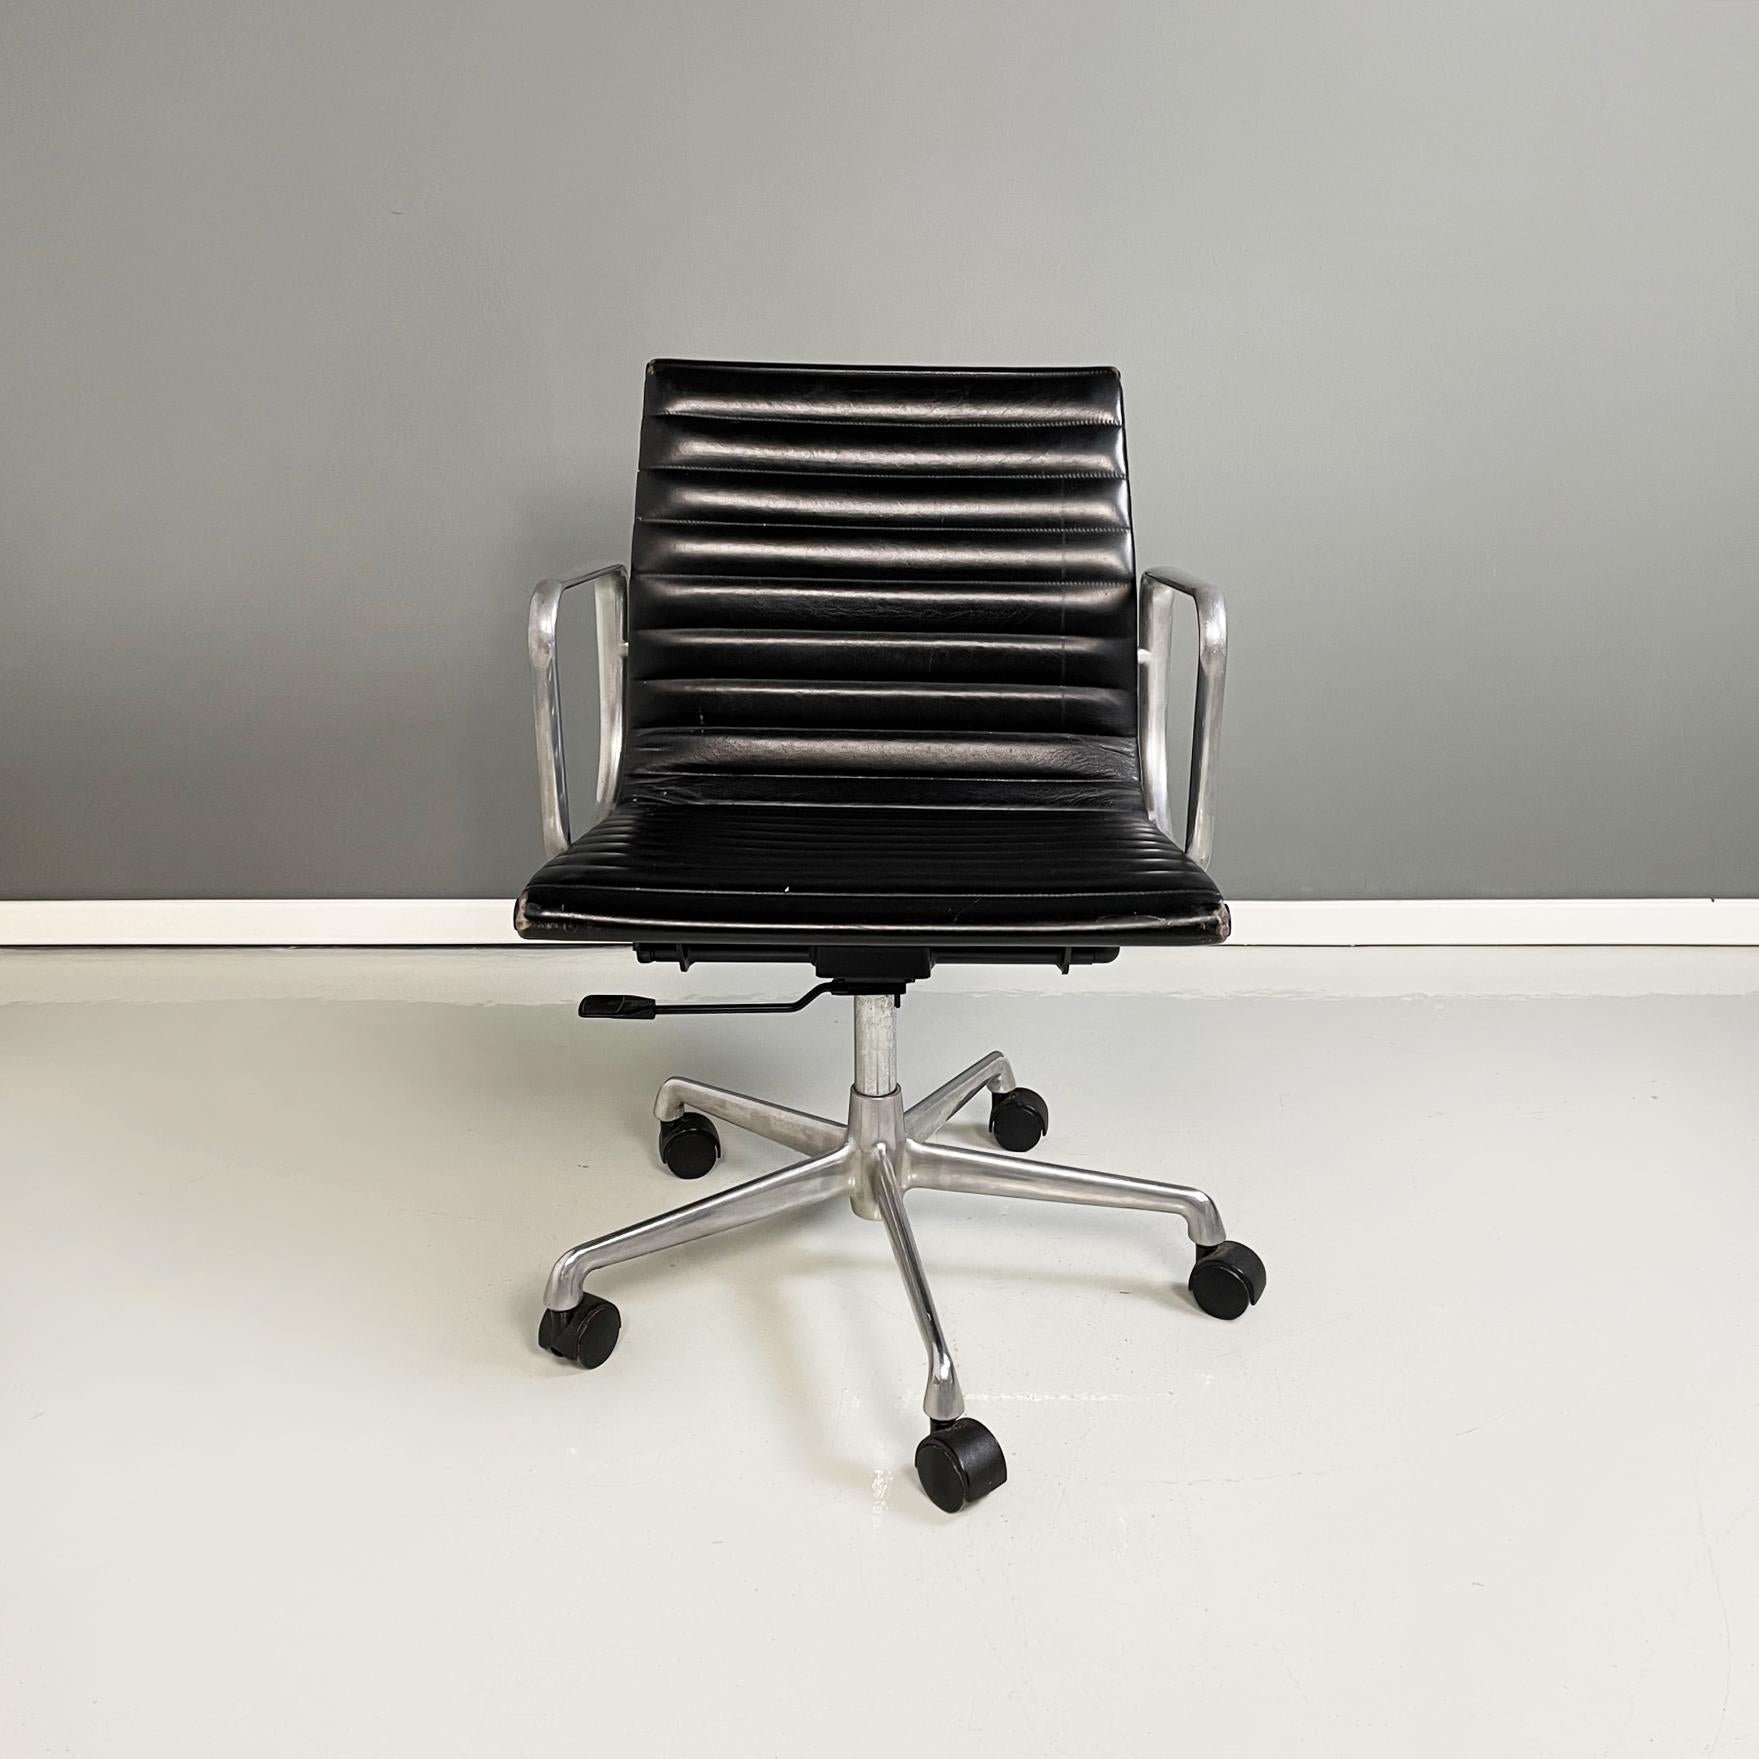 Chaises de bureau italiennes modernes mod. Groupe en aluminium Ea-117 de Charles et Ray Eames pour ICF, 1970
Ensemble de trois chaises de bureau mod. Ea-117Aluminium Groupe en cuir noir et aluminium. L'assise et le dossier sont recouverts de cuir